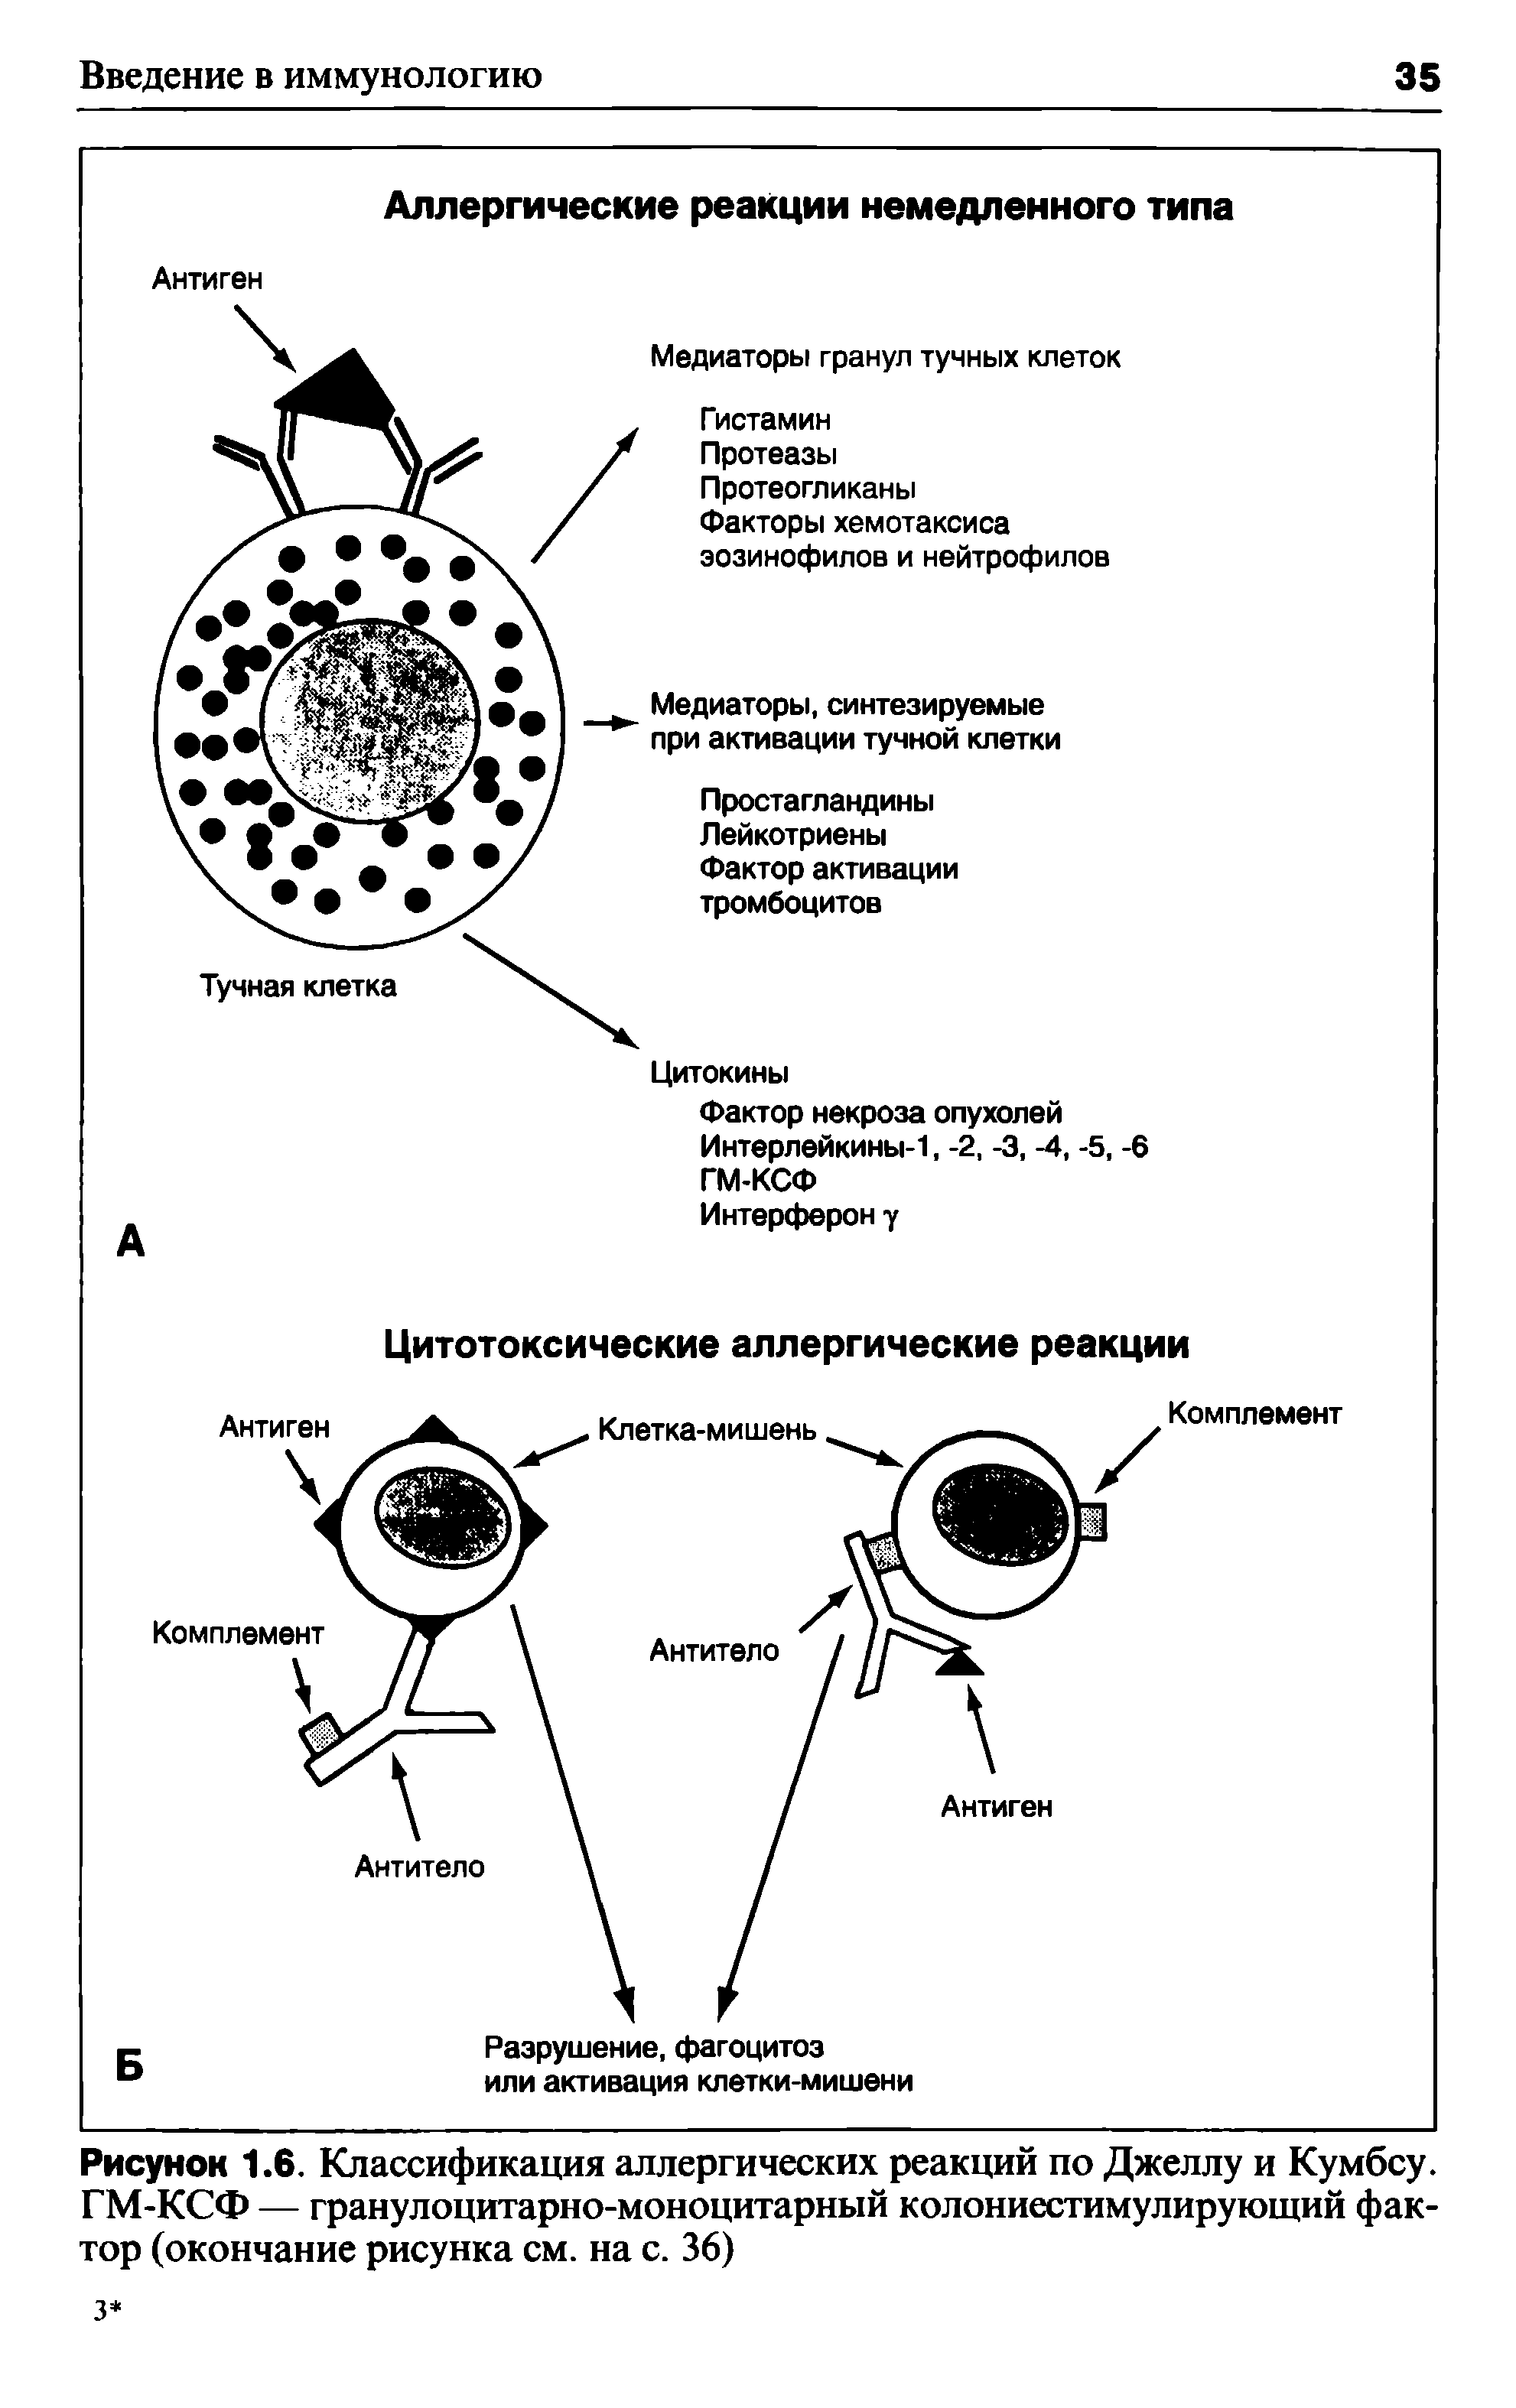 Рисунок 1.6. Классификация аллергических реакций по Джеллу и Кумбсу. ГМ-КСФ — гранулоцитарно-моноцитарный колониестимулирующий фактор (окончание рисунка см. на с. 36)...